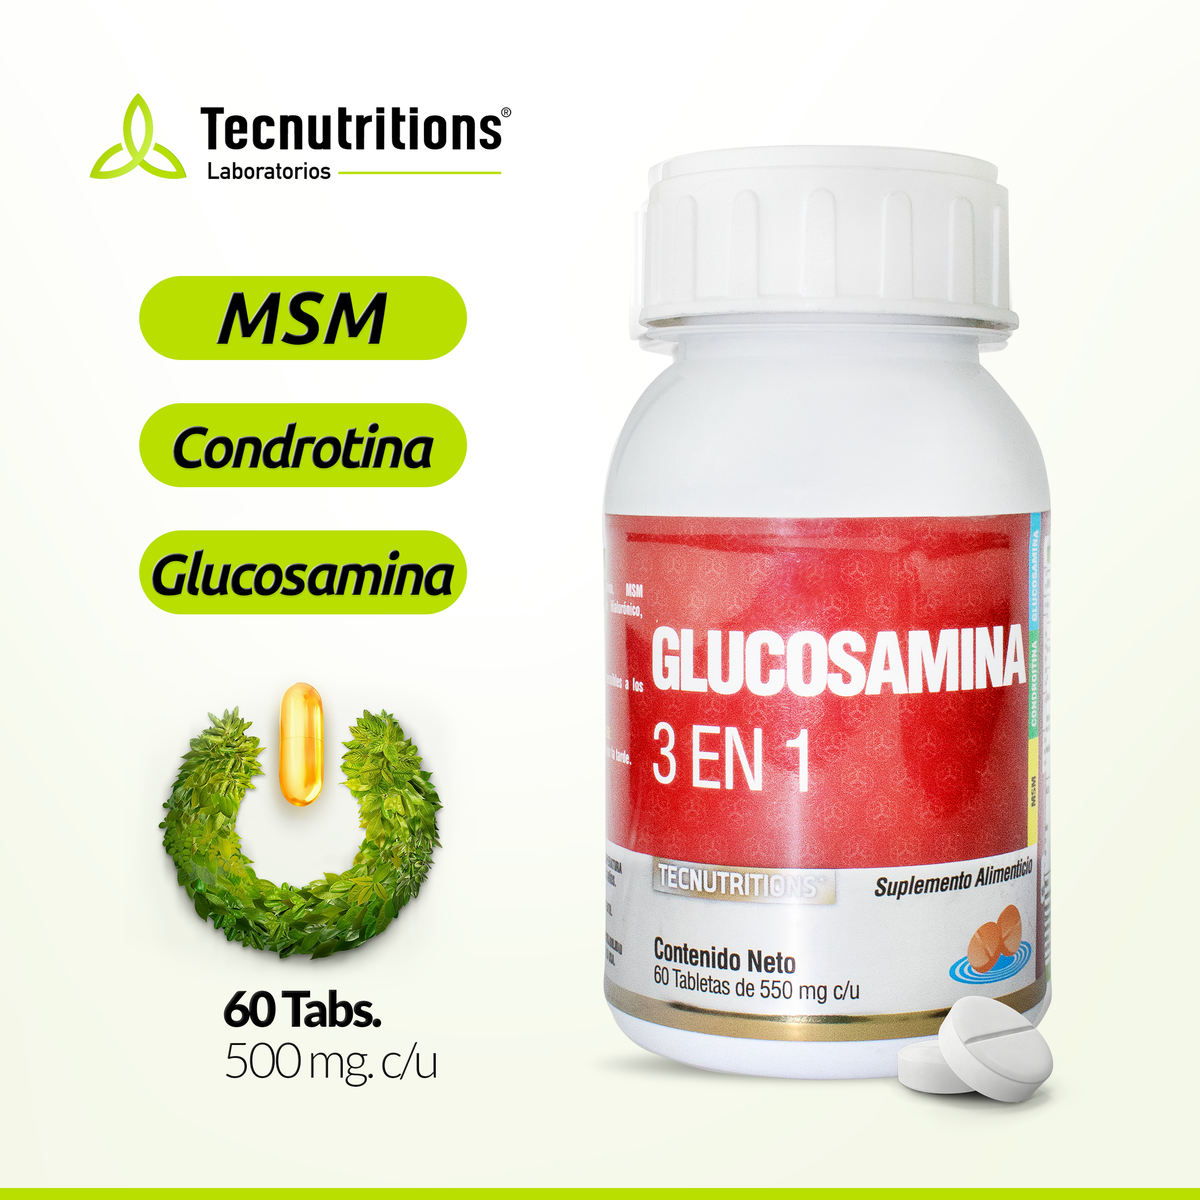 Suplemento alimenticio Glucosamina 3 en 1, 60 tabs, con glucosamina, condroitina, msm